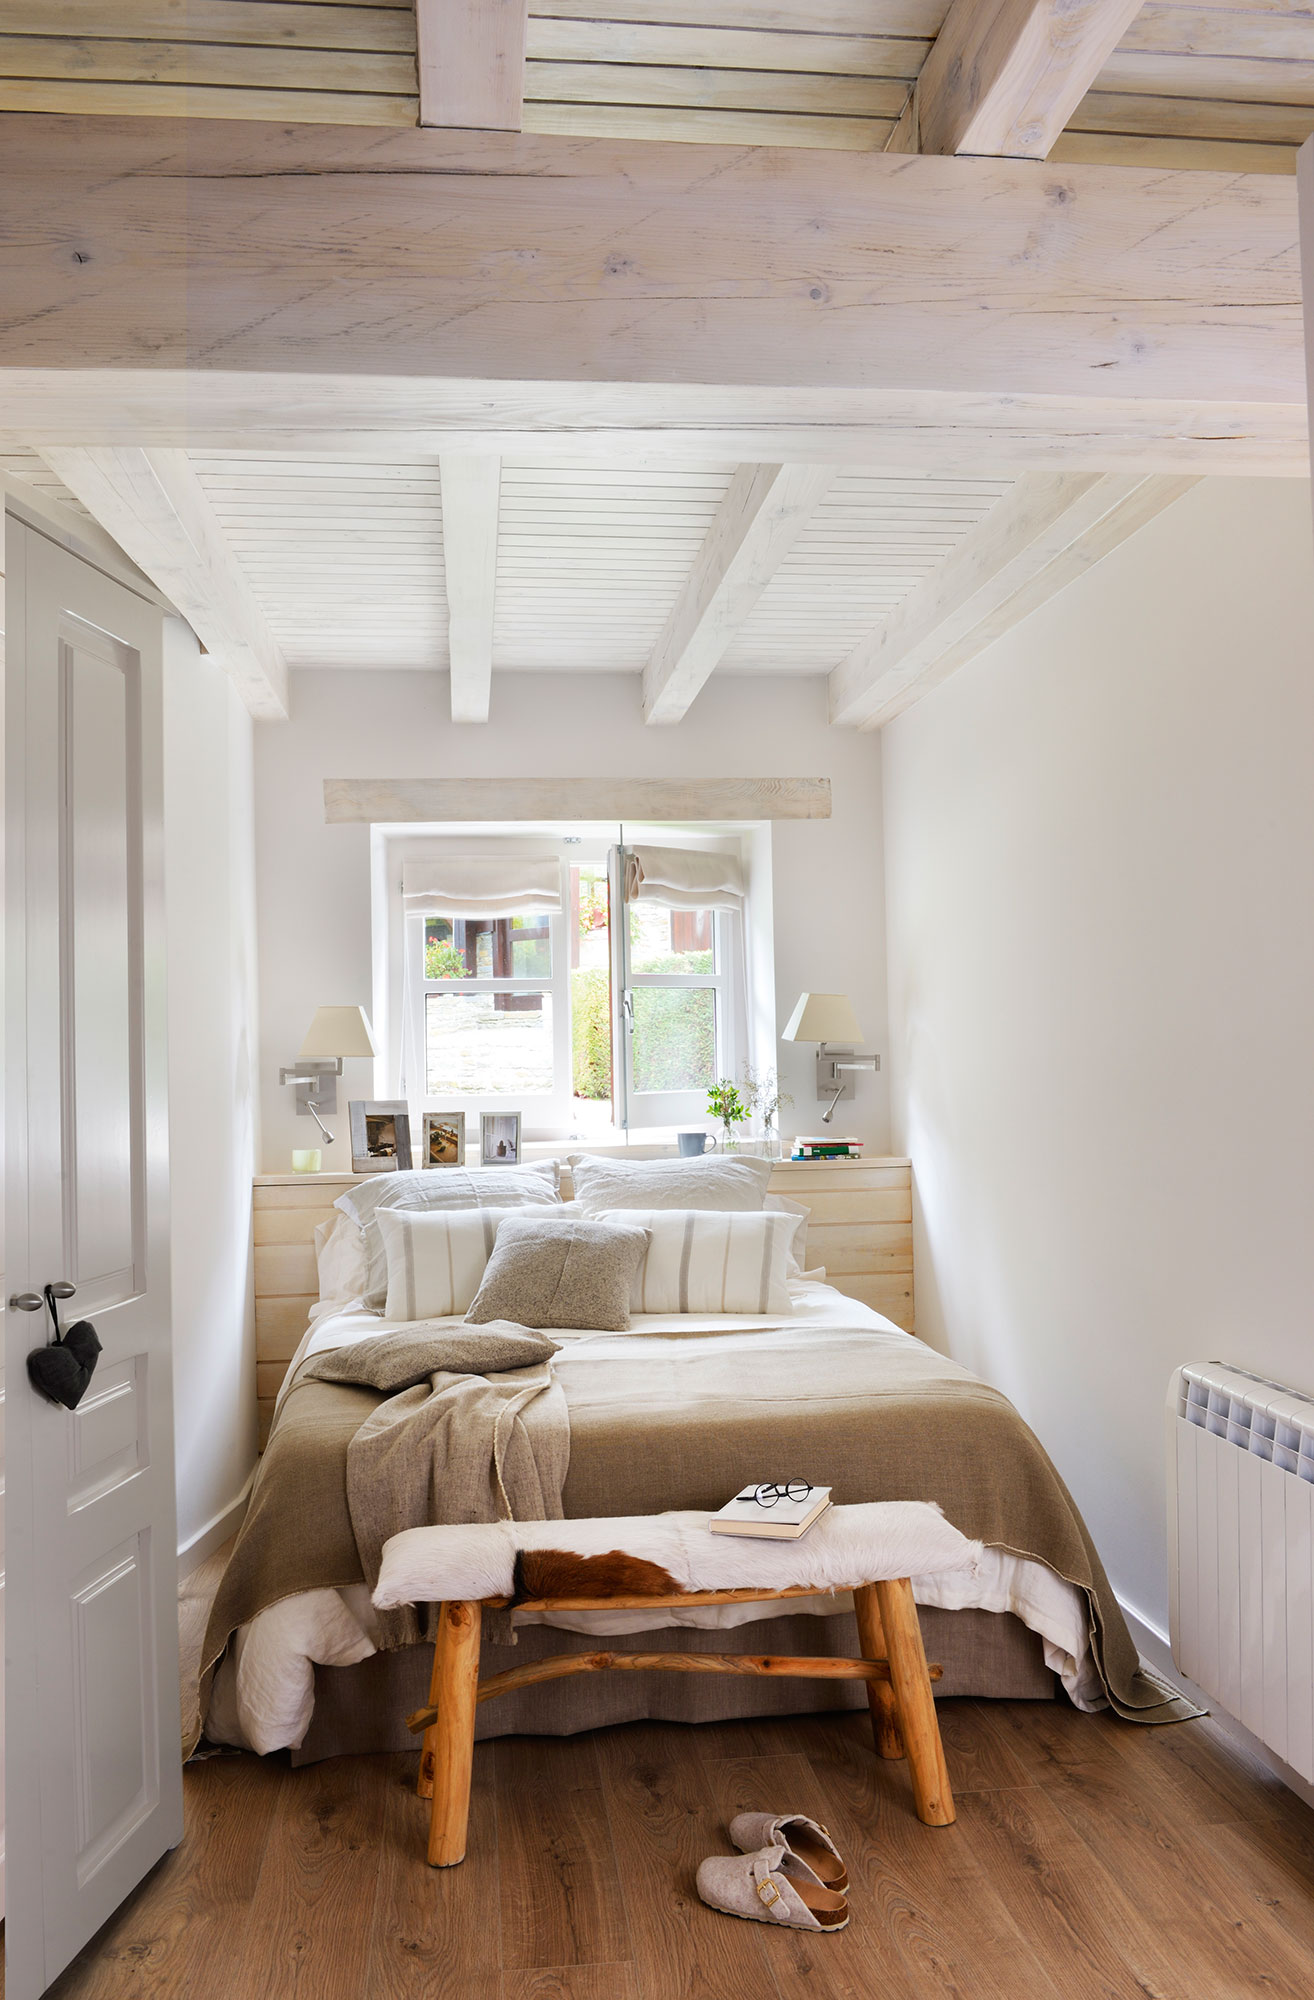 Dormitorio: cómo decorarlo y aprovecharlo mejor según los metros